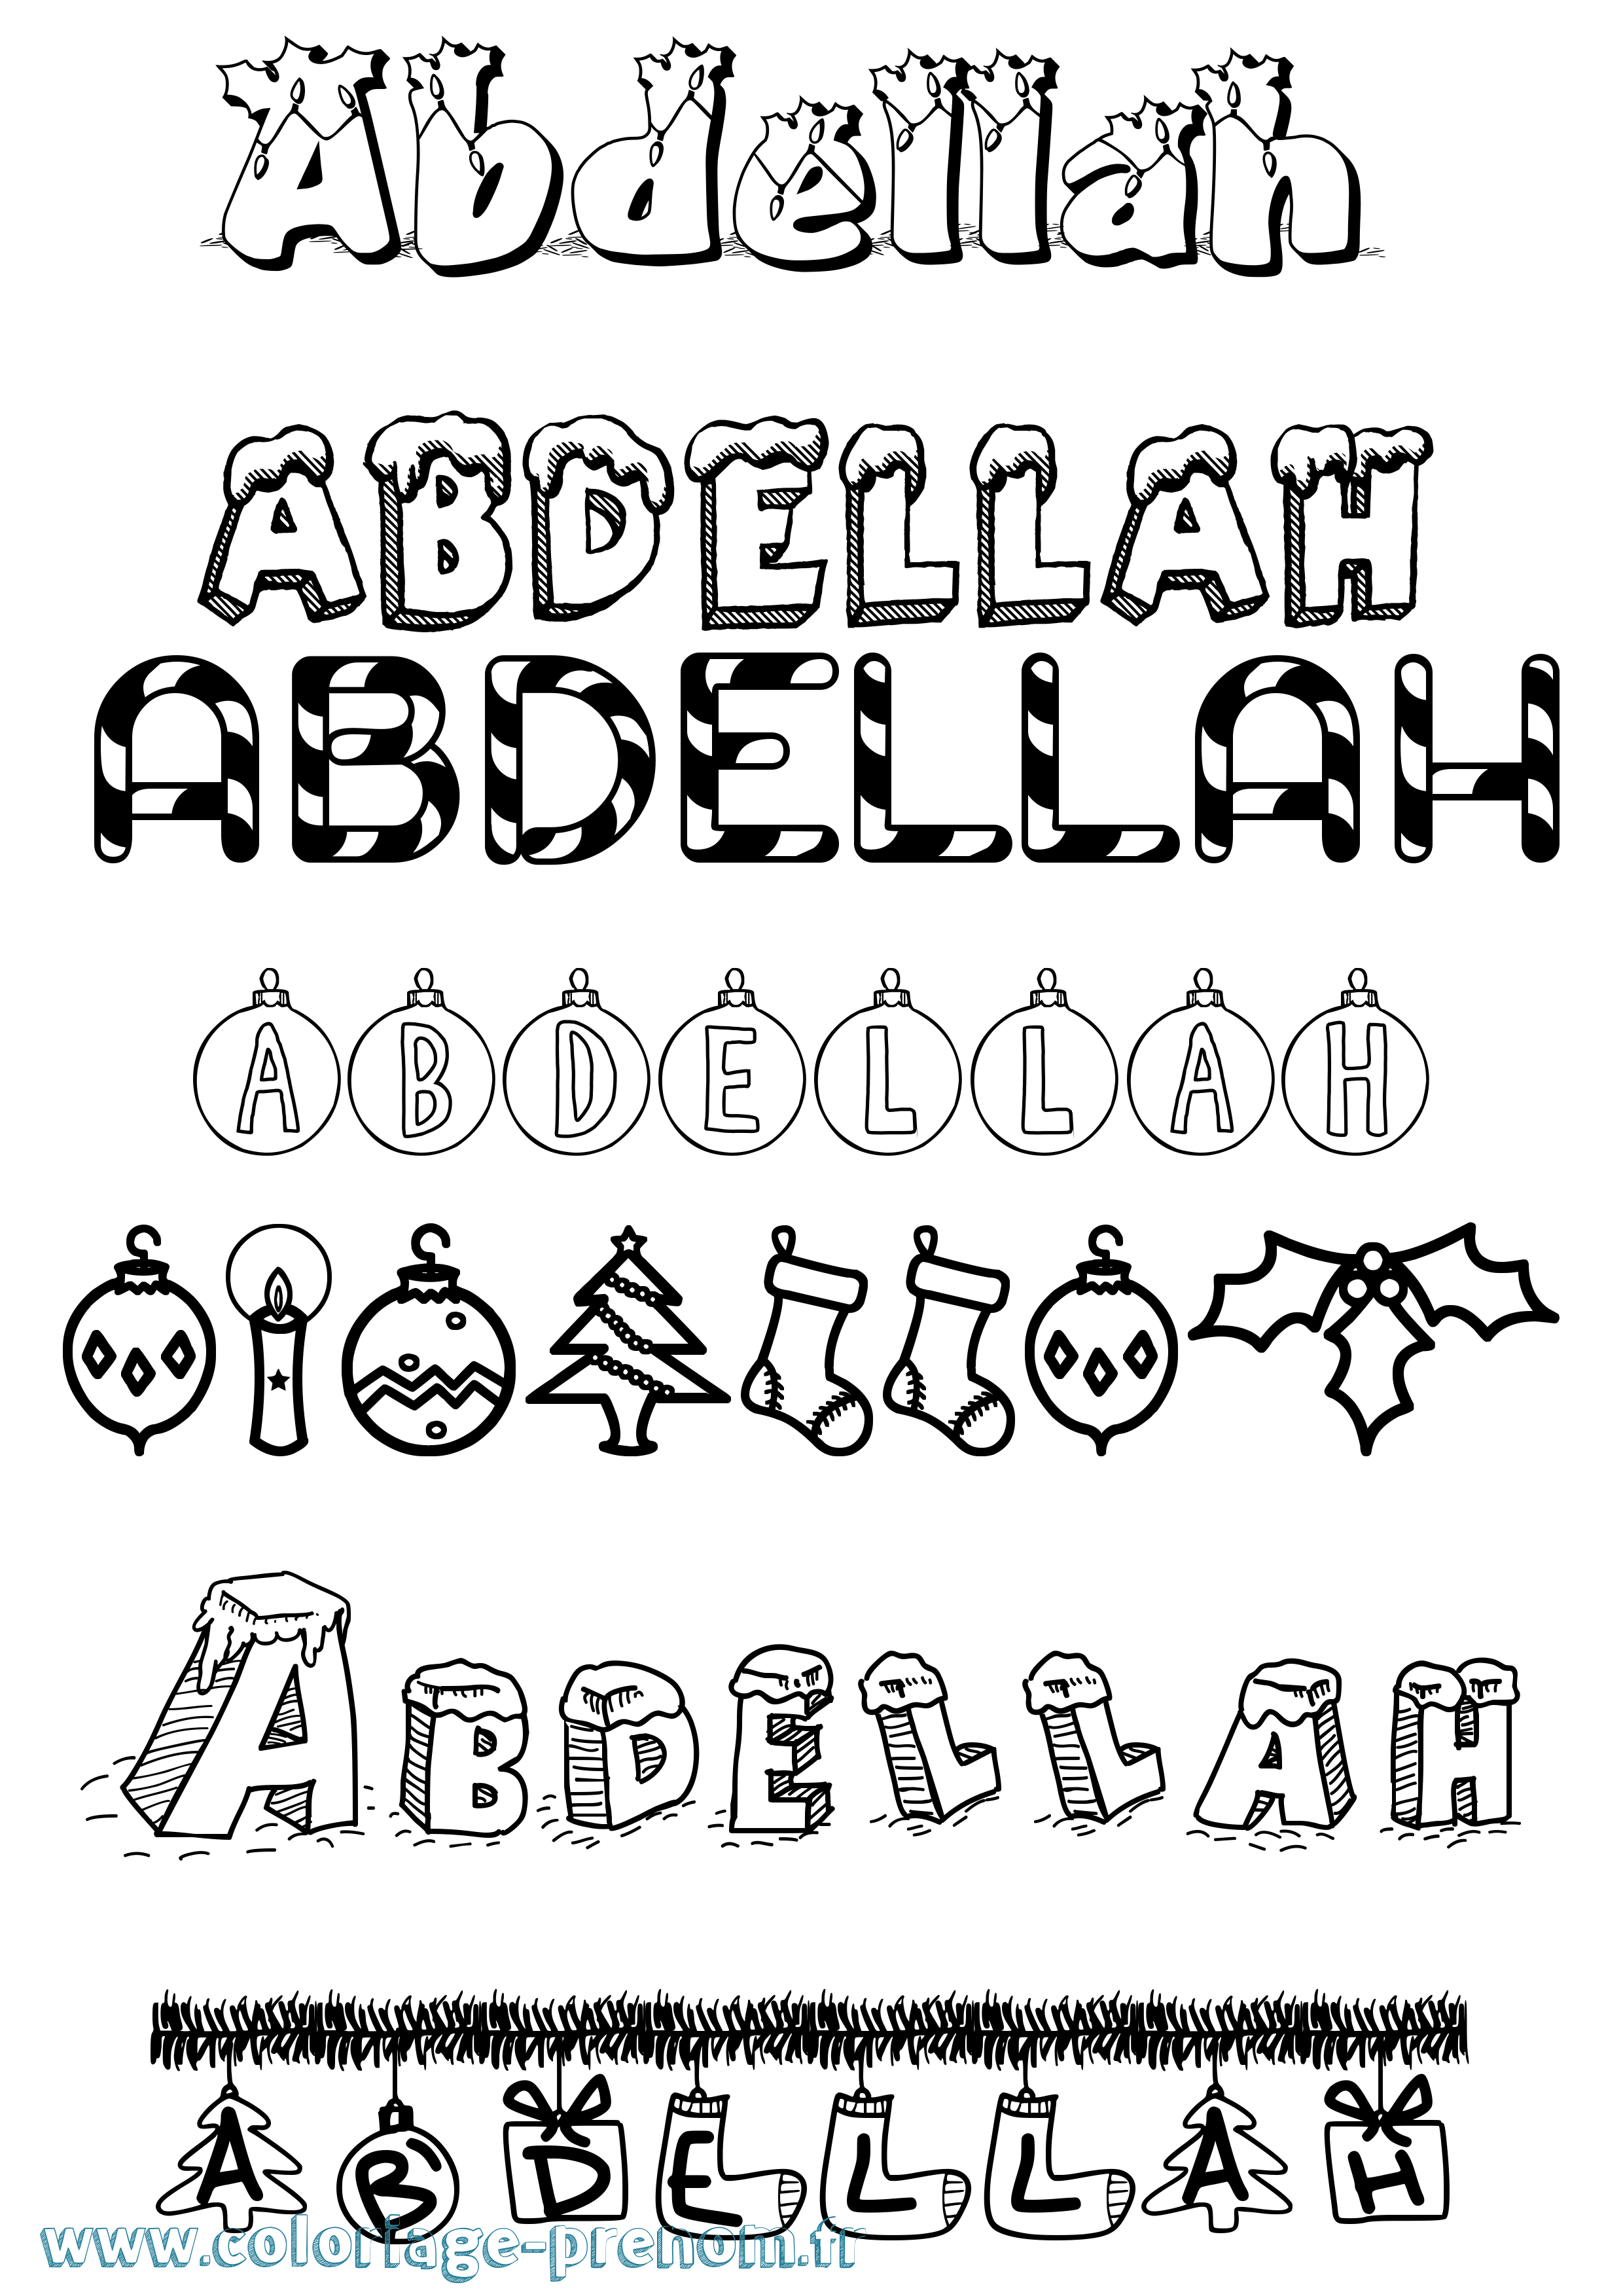 Coloriage prénom Abdellah